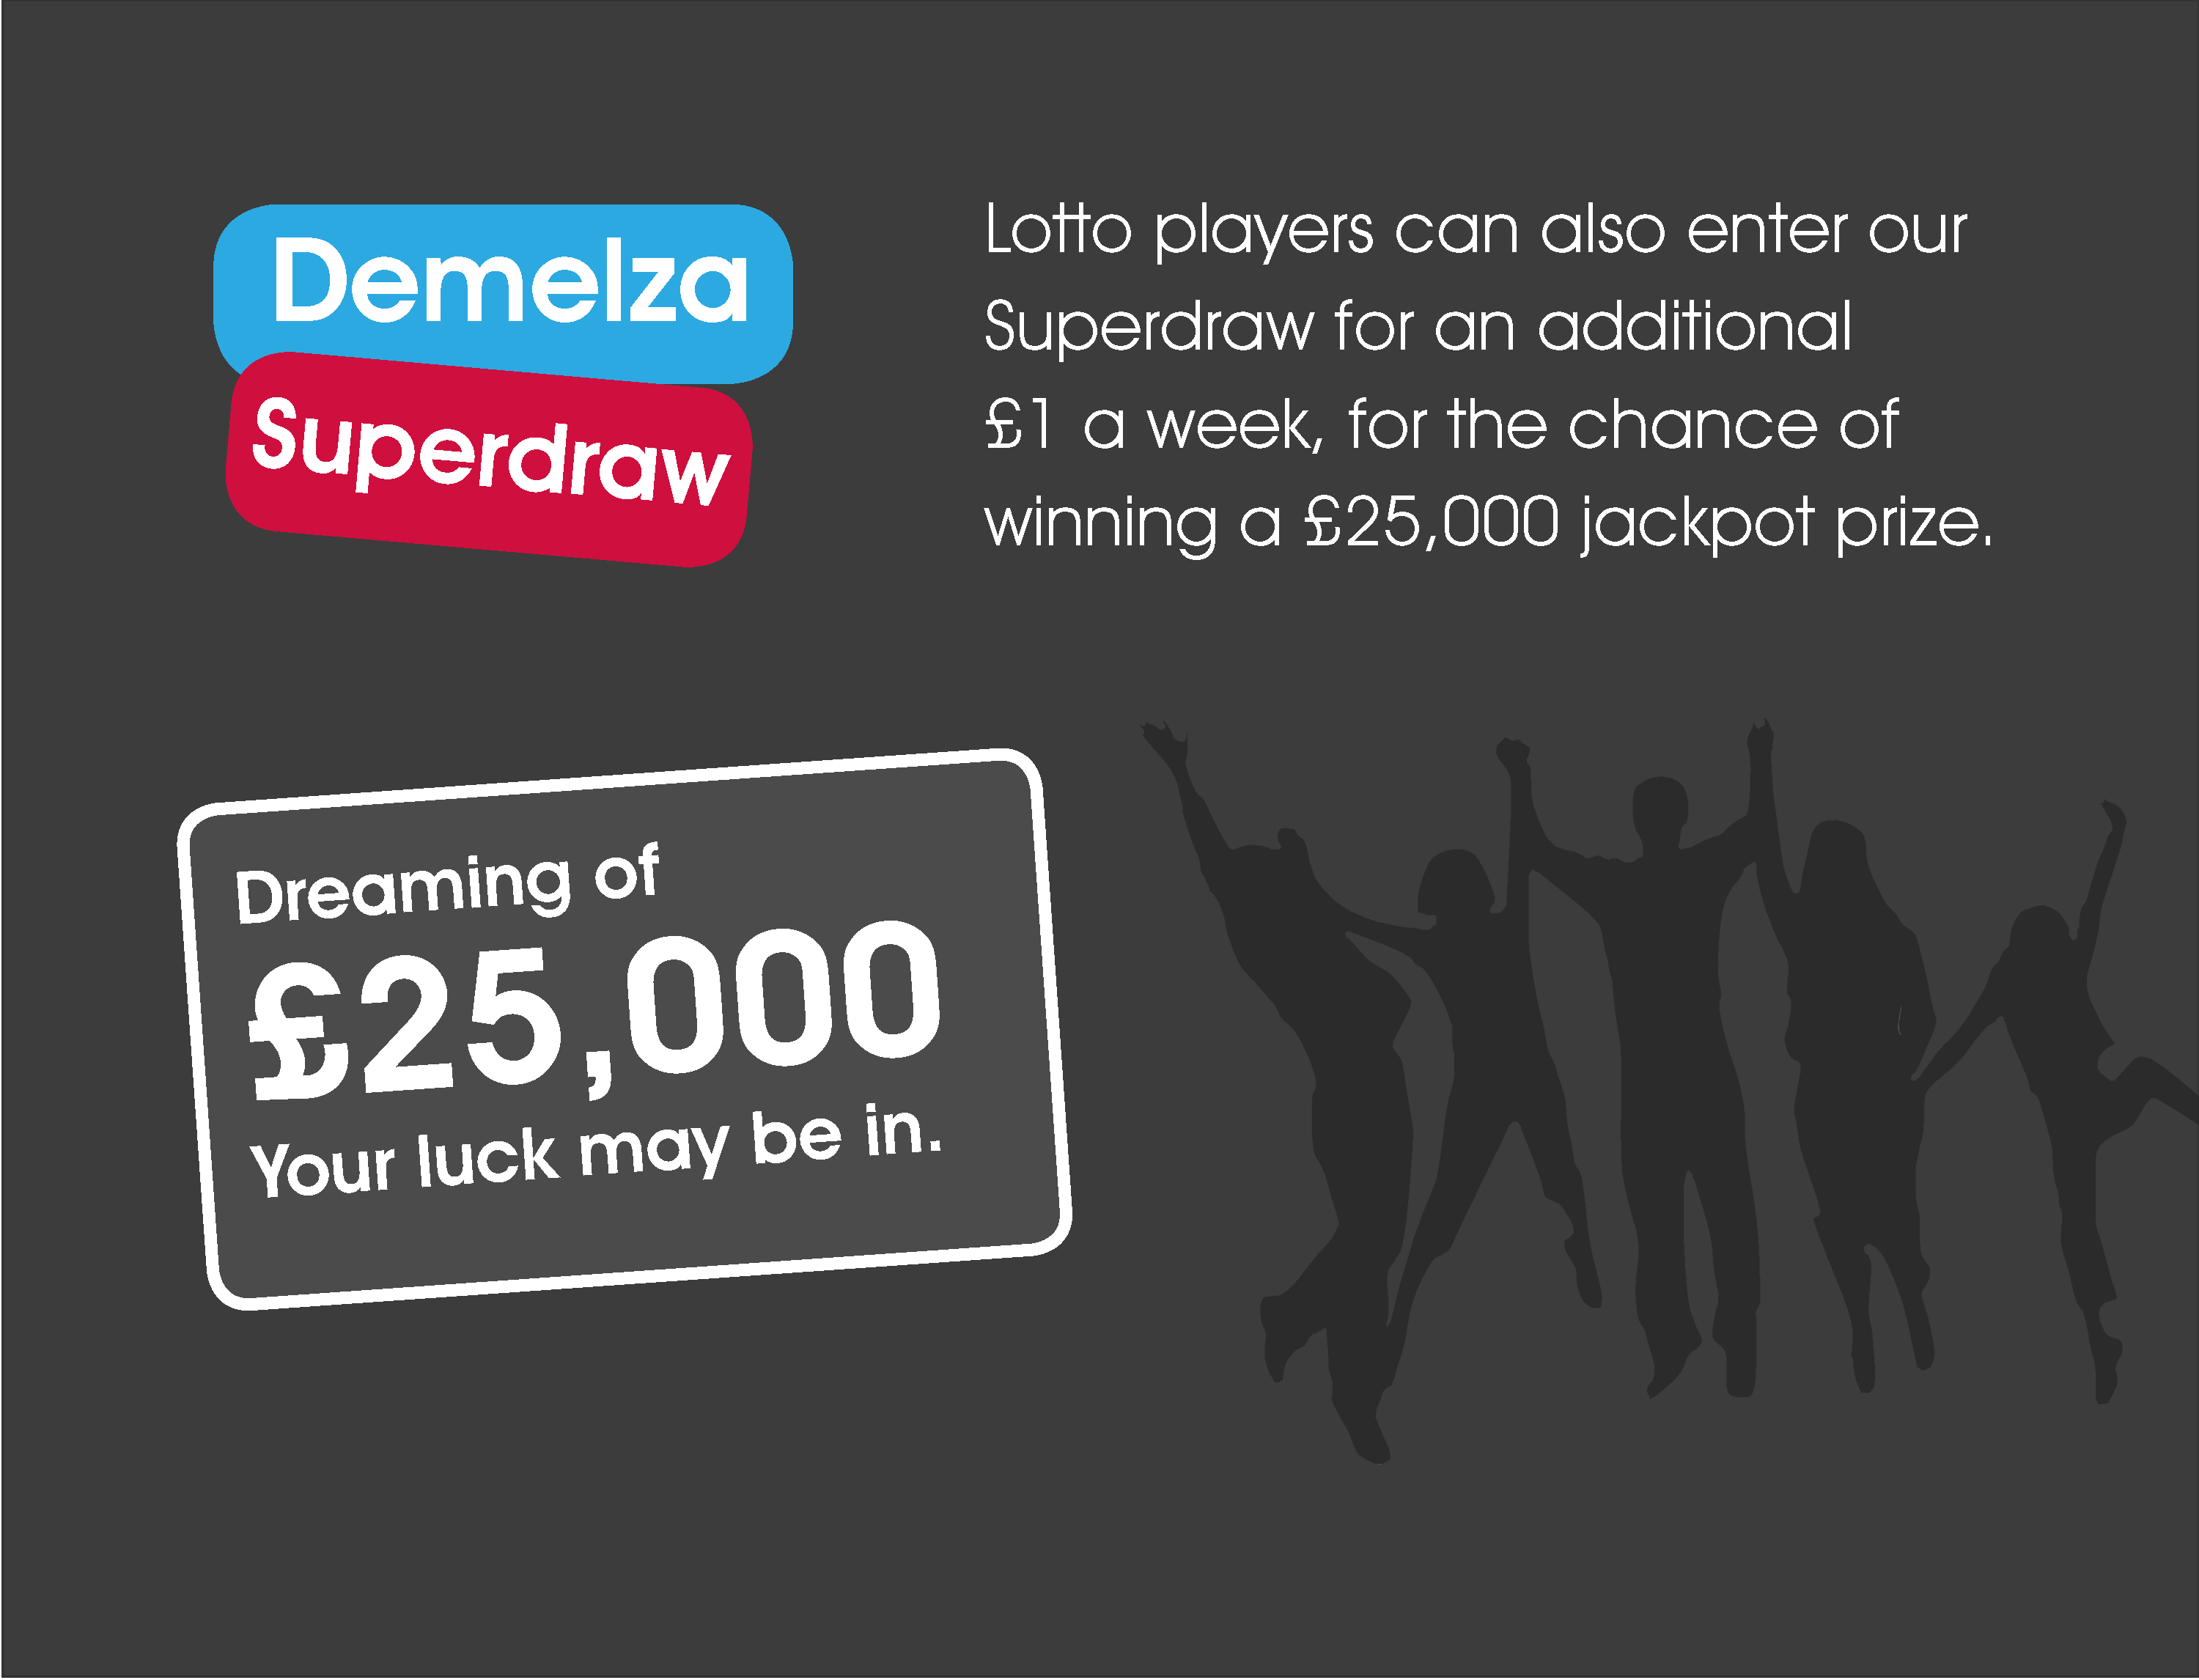 Demelza Superdraw prize to win